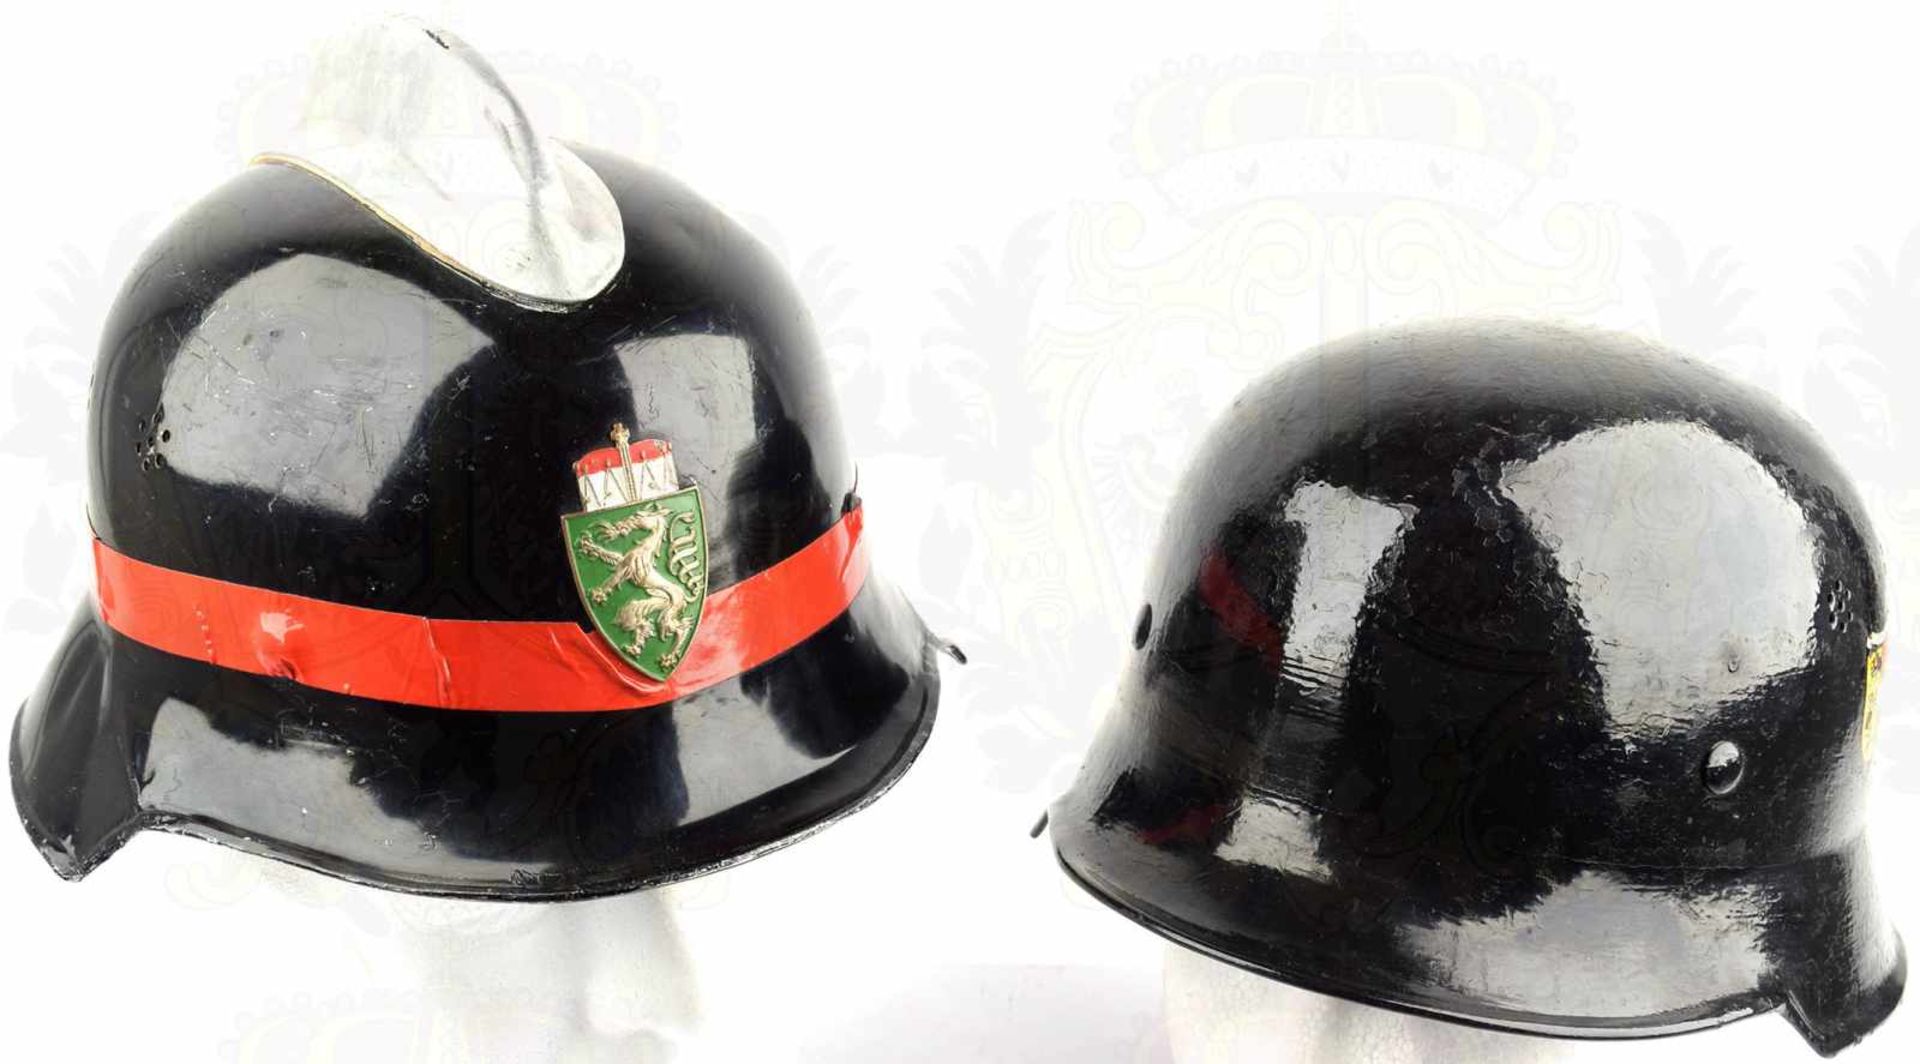 2 FEUERWEHR-EINSATZHELME, ähnlich Feuerwehrhelm 1934, Glocken Stahl bzw. Alu., schwarz überlackiert,